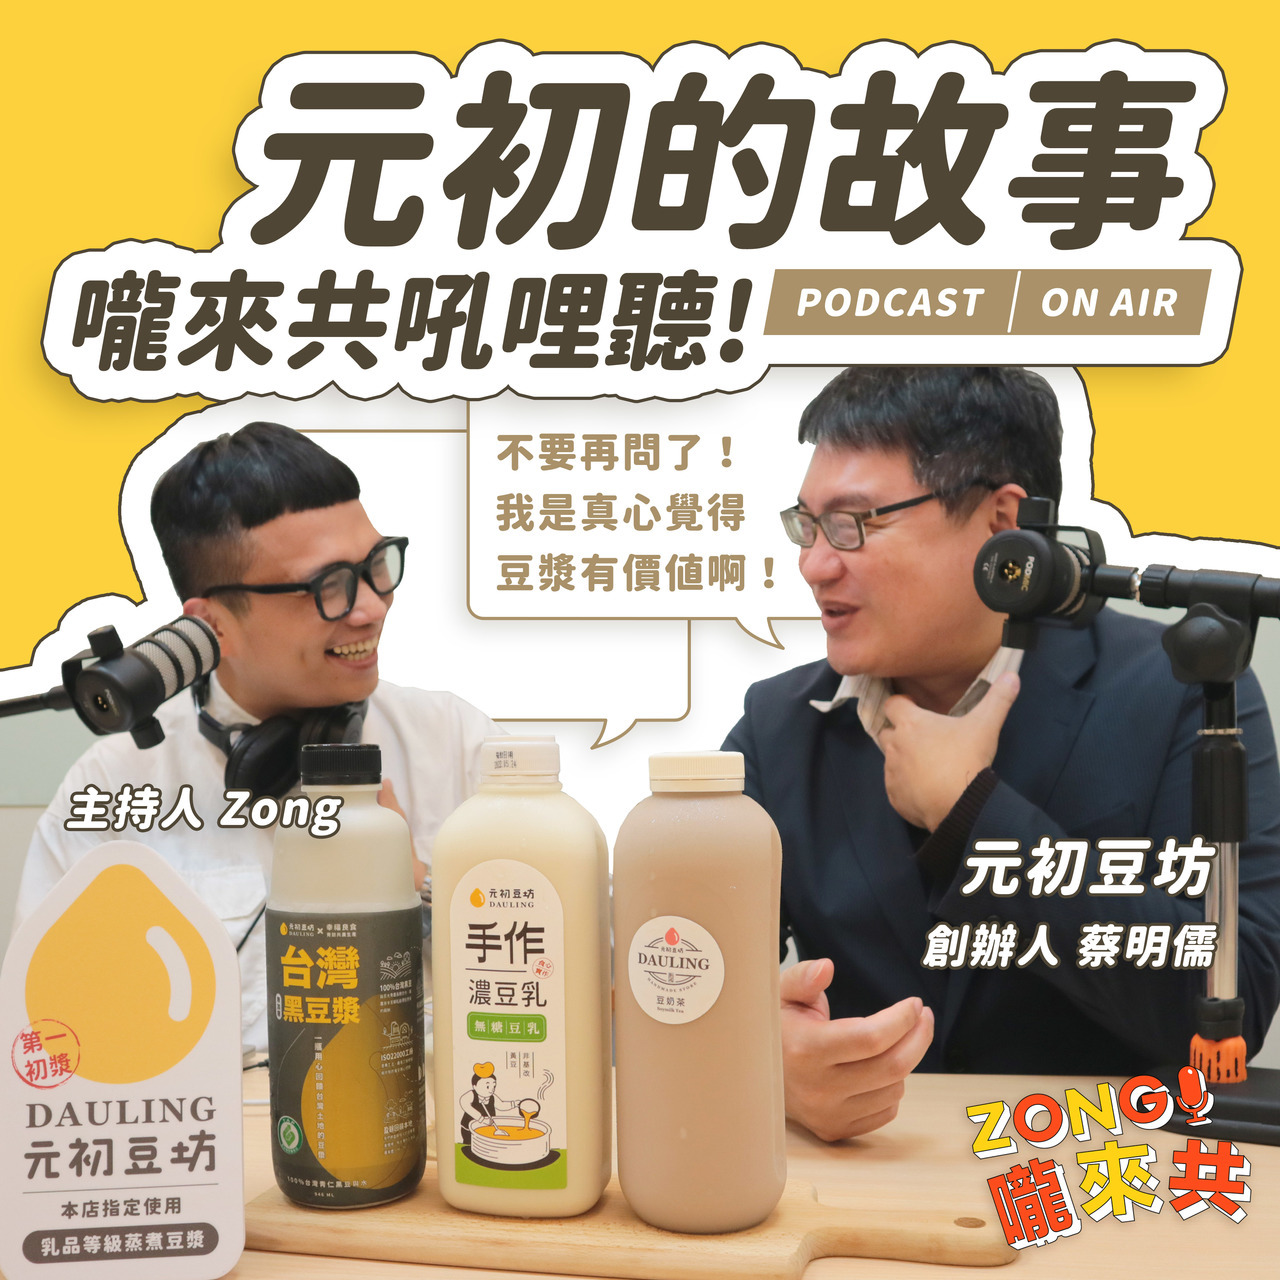 很高興這次可以和『 ZONG嚨來共 』合作，在Podcast上分享元初豆坊創辦人蔡明儒的創業路程以及對於元初的品牌定位。